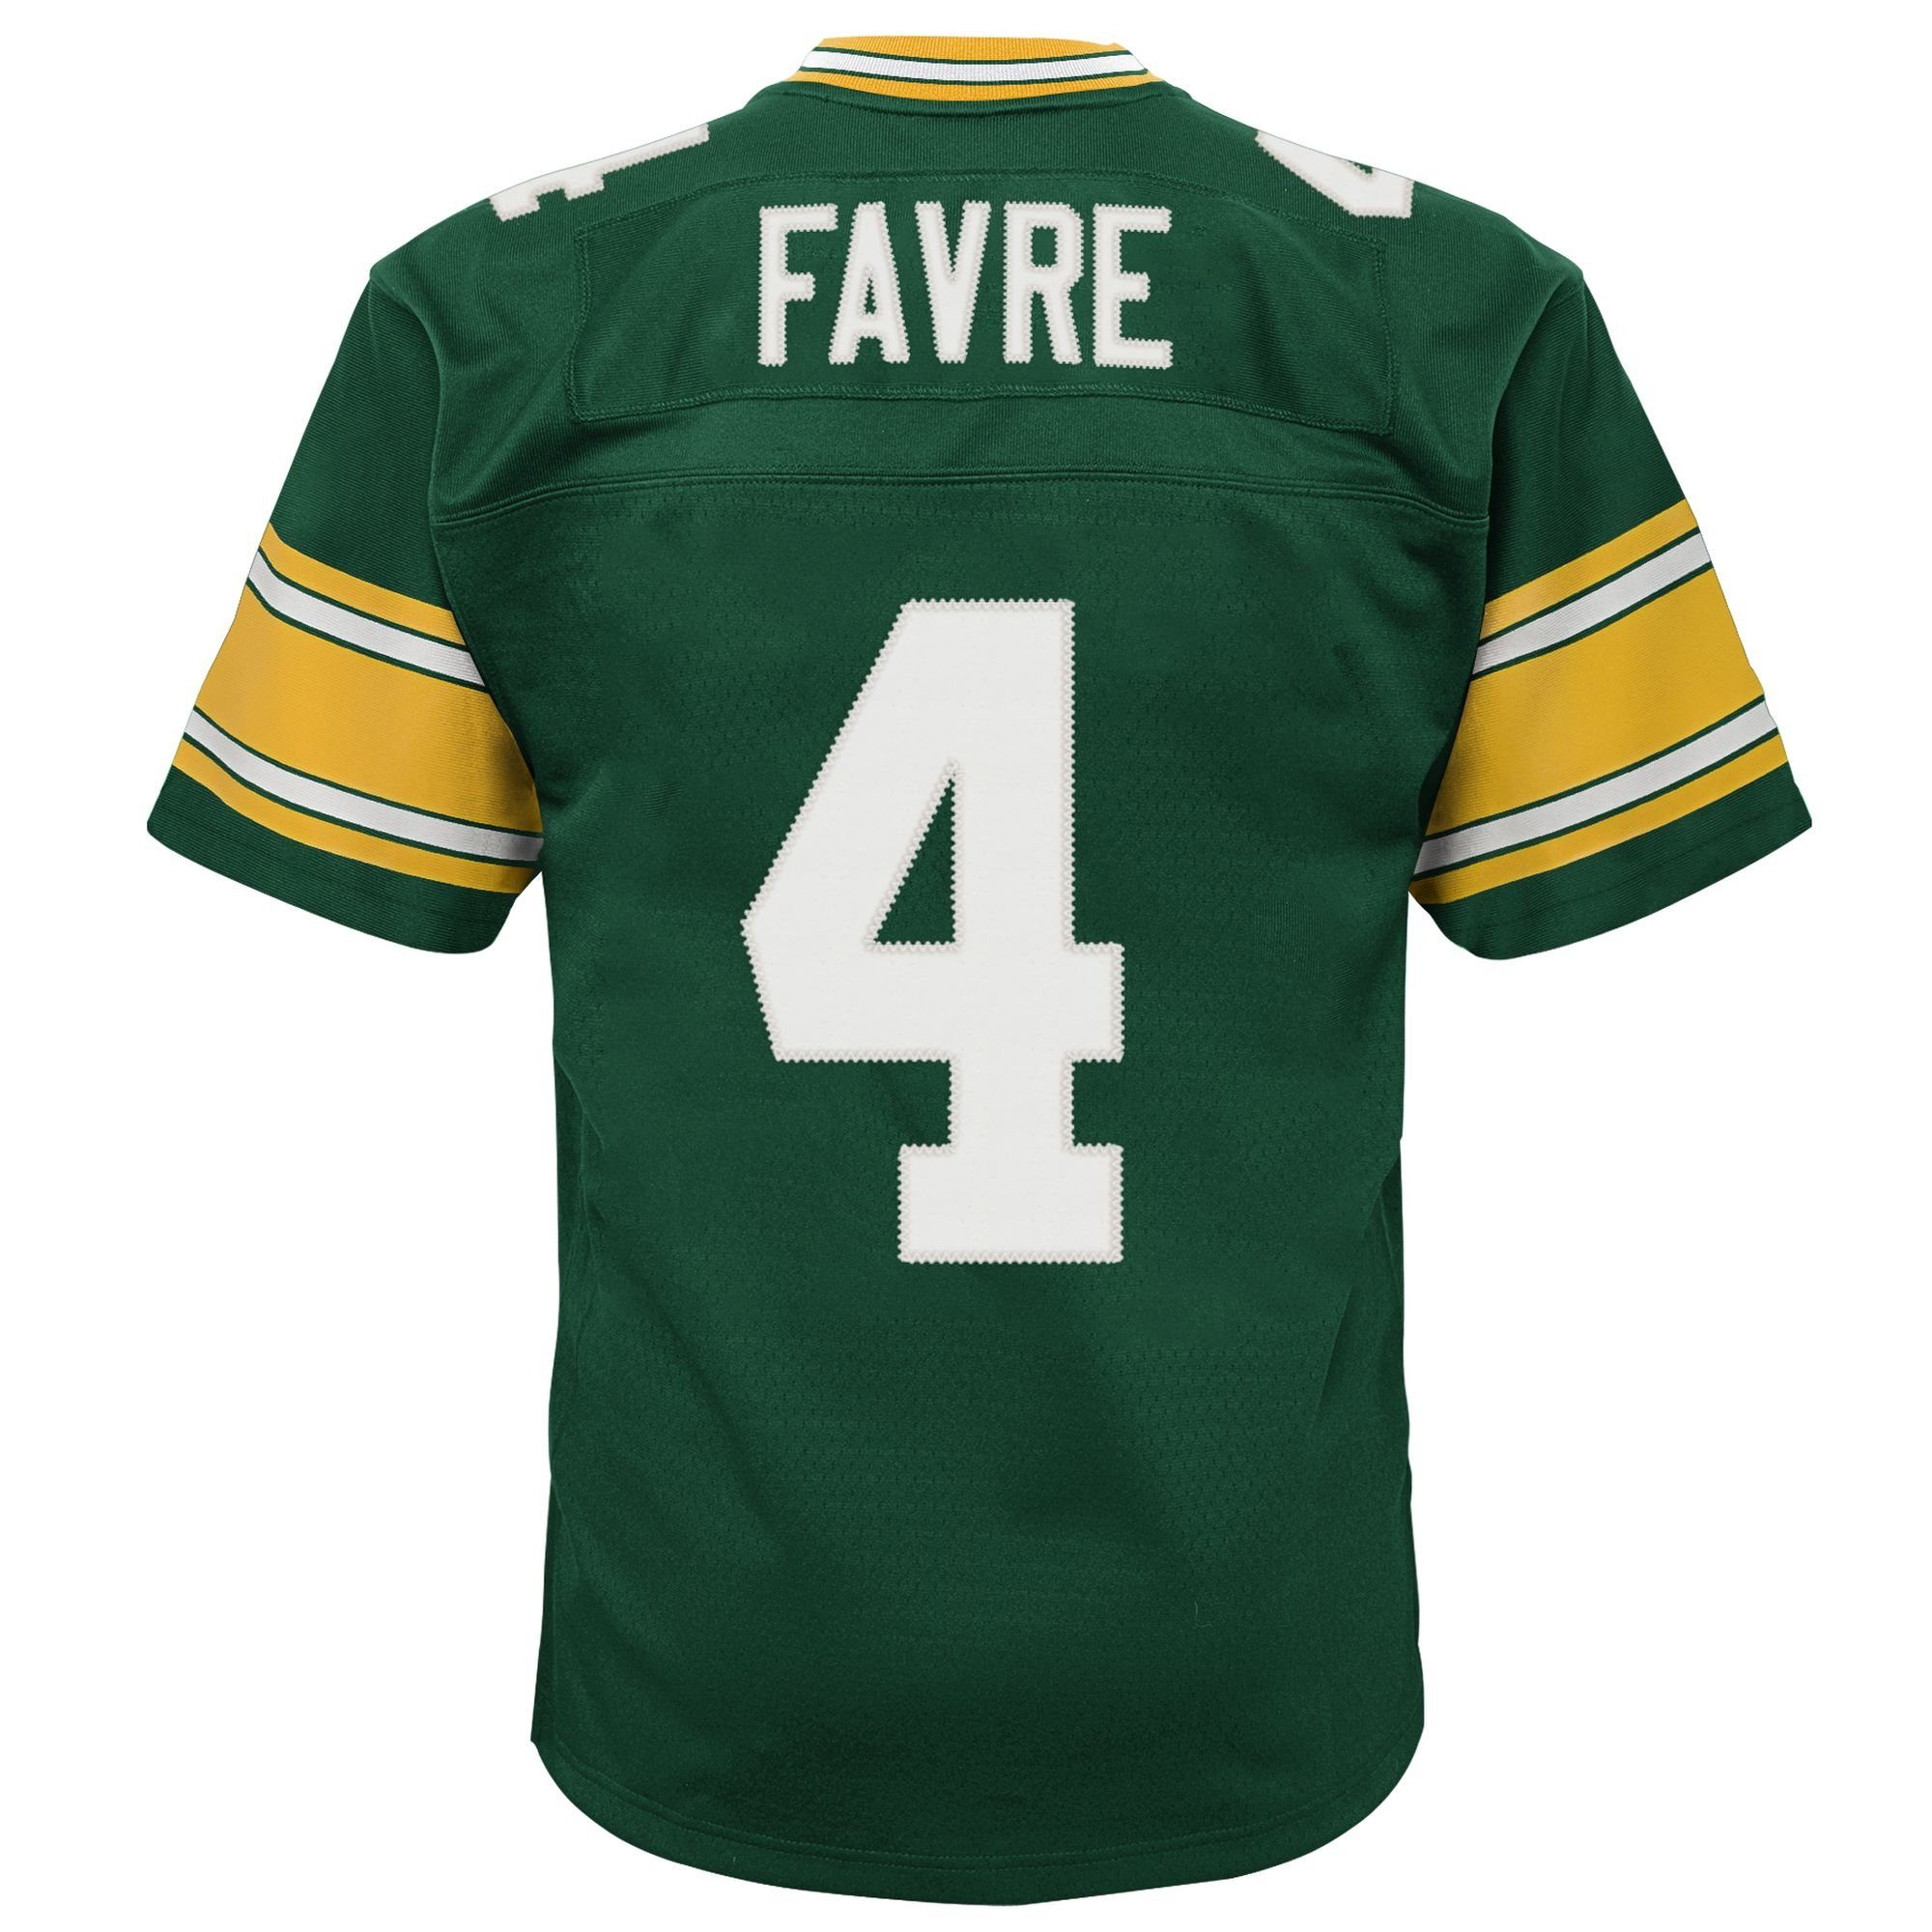 Print-Shirt Favre Mitchell Legacy Bay Brett Jersey Ness Packers Green &